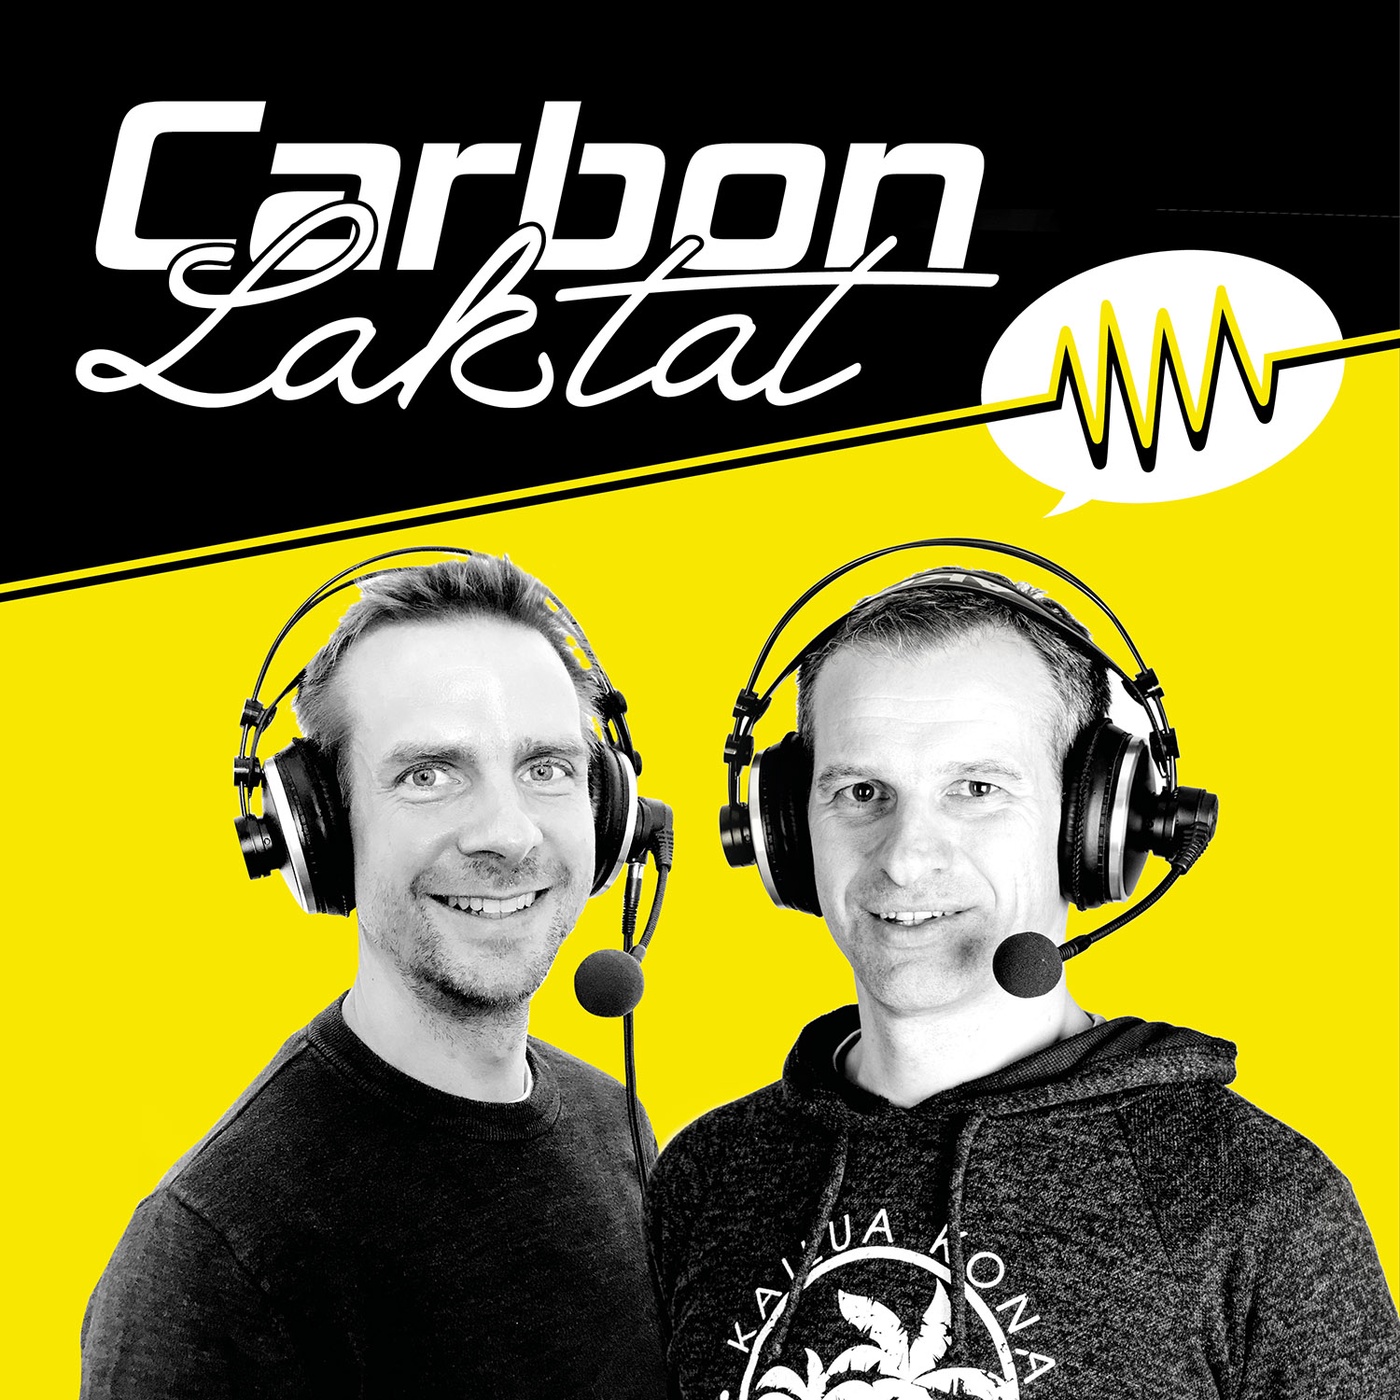 Carbon & Laktat: Das Rennen des Jahres – irgendwann im April, irgendwo am Deich